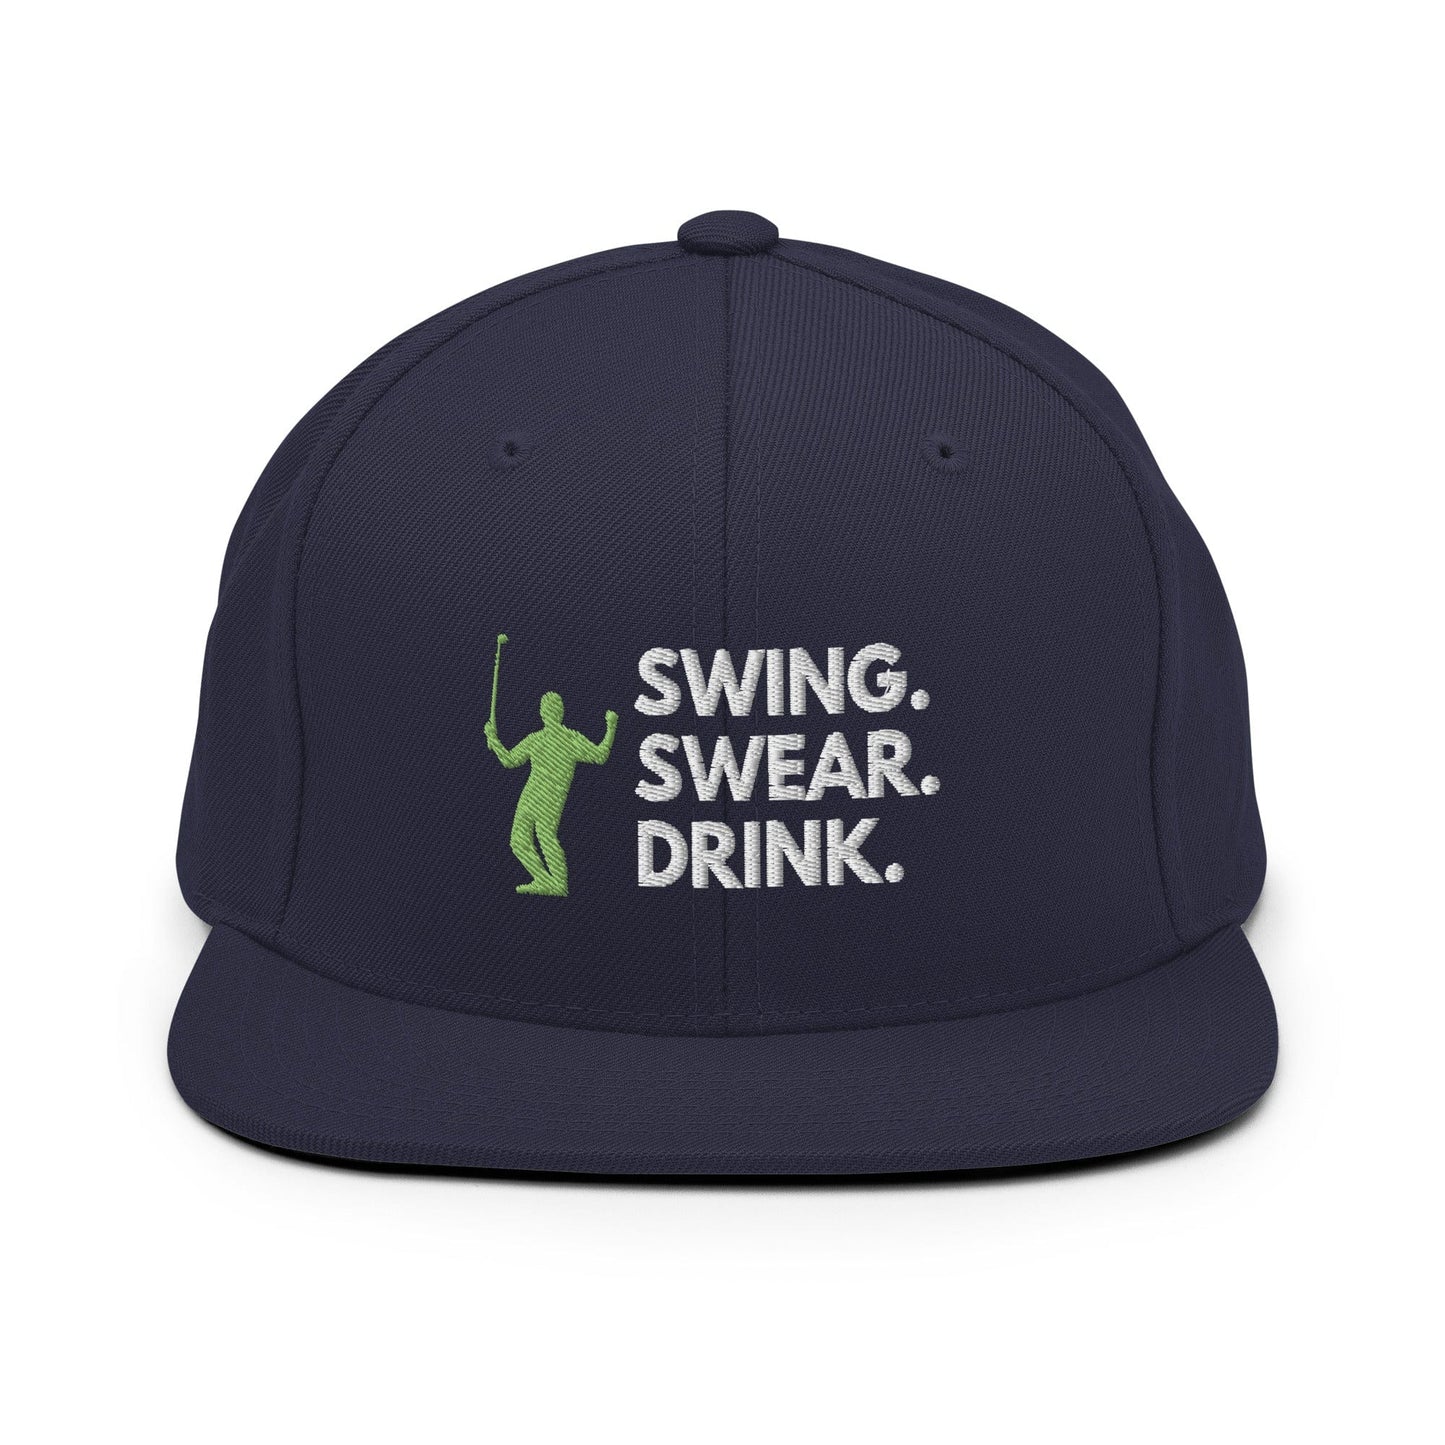 Funny Golfer Gifts  Snapback Hat Navy Swing. Swear. Drink Snapback Hat